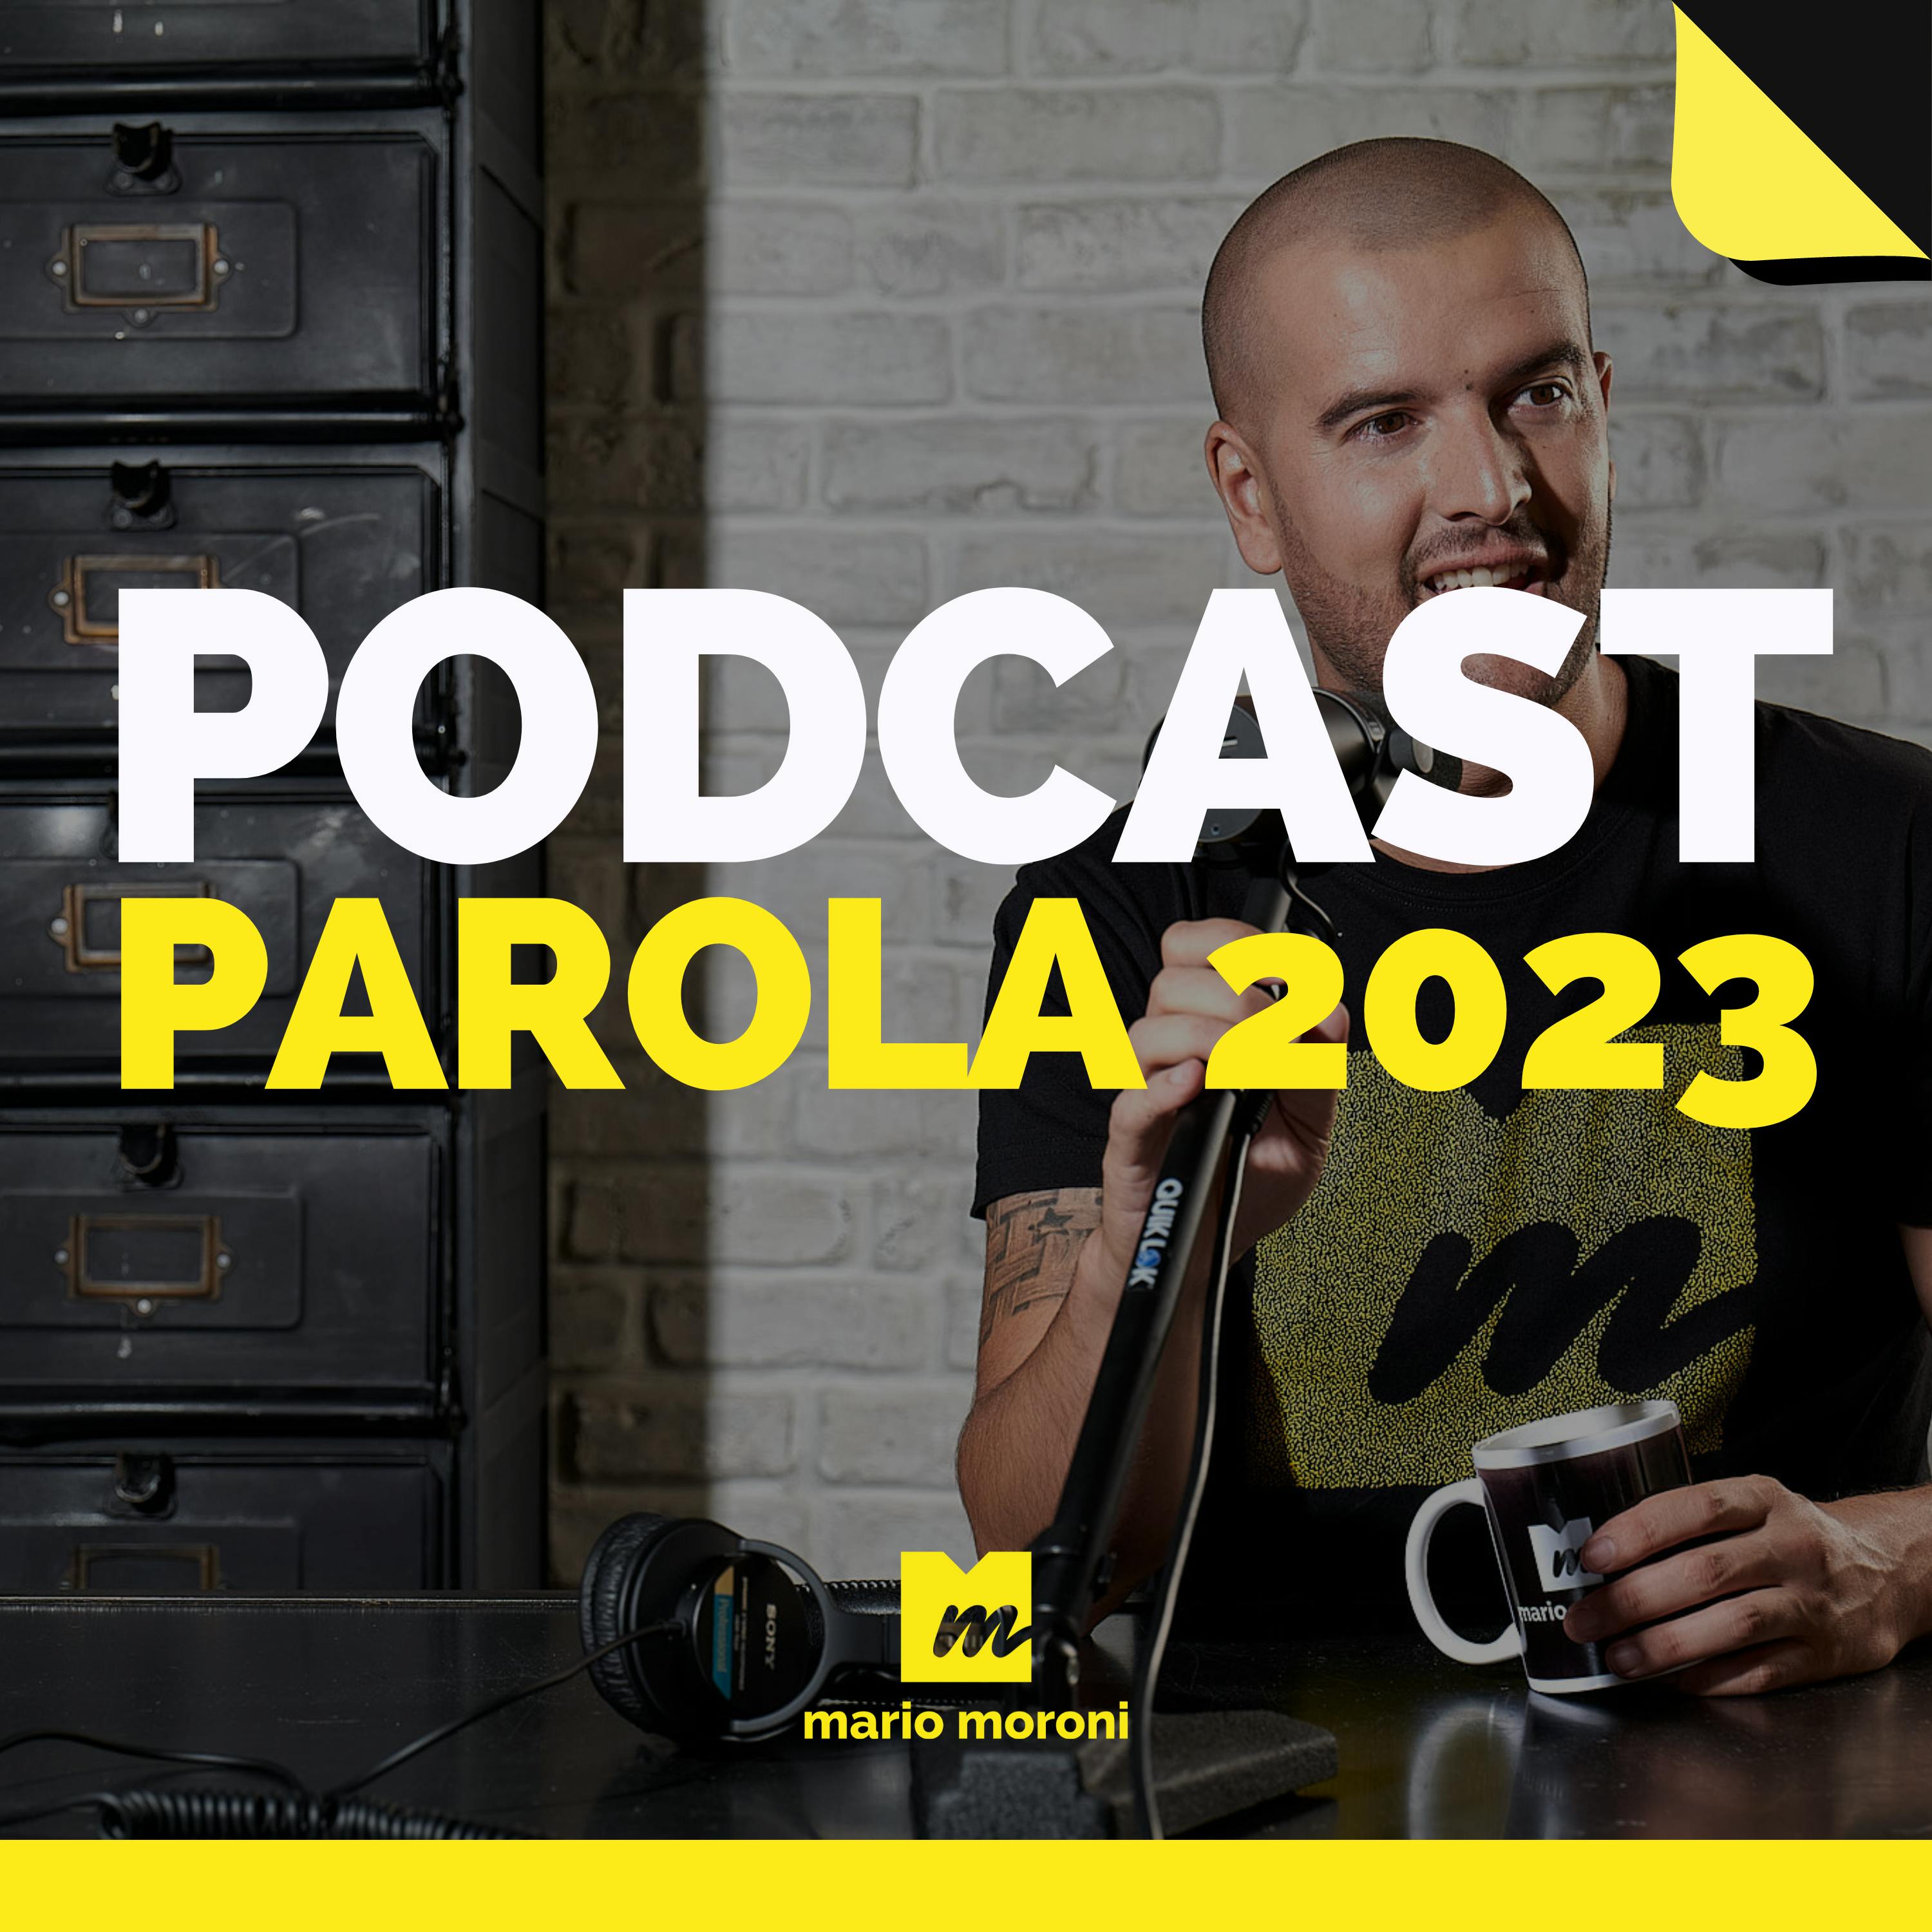 Il 2023 sarà l'anno del Podcast o dell'intelligenza artificiale?